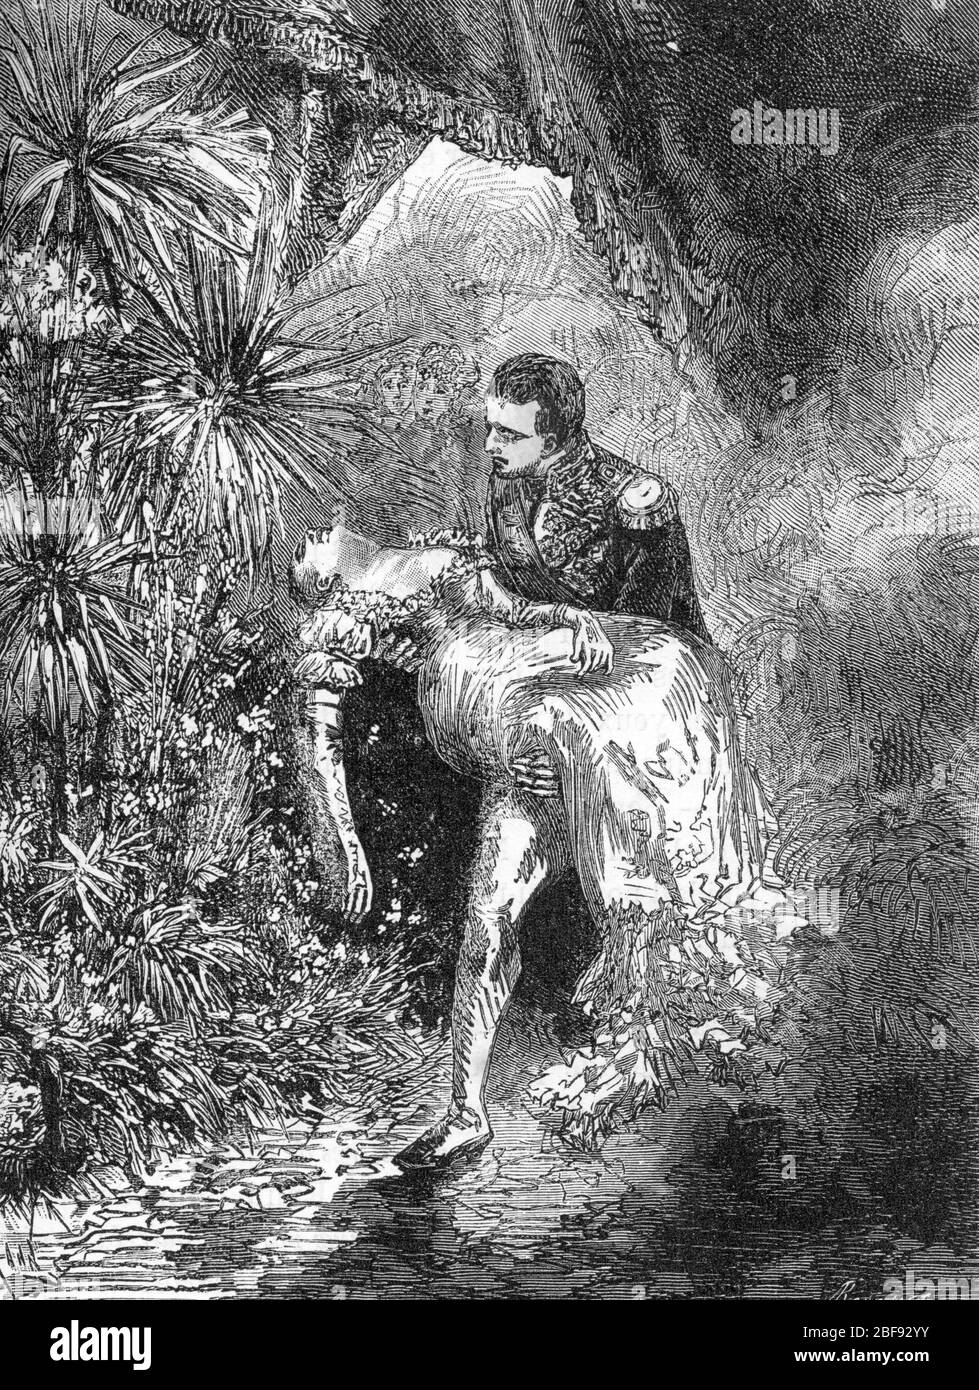 'L'empereur Napoleon Ier (1769-1821) sauvant Marie Louise (1791-1847) des flammes Lors du Grand incendie de l'Ambassade d'Autriche a Pa Foto Stock